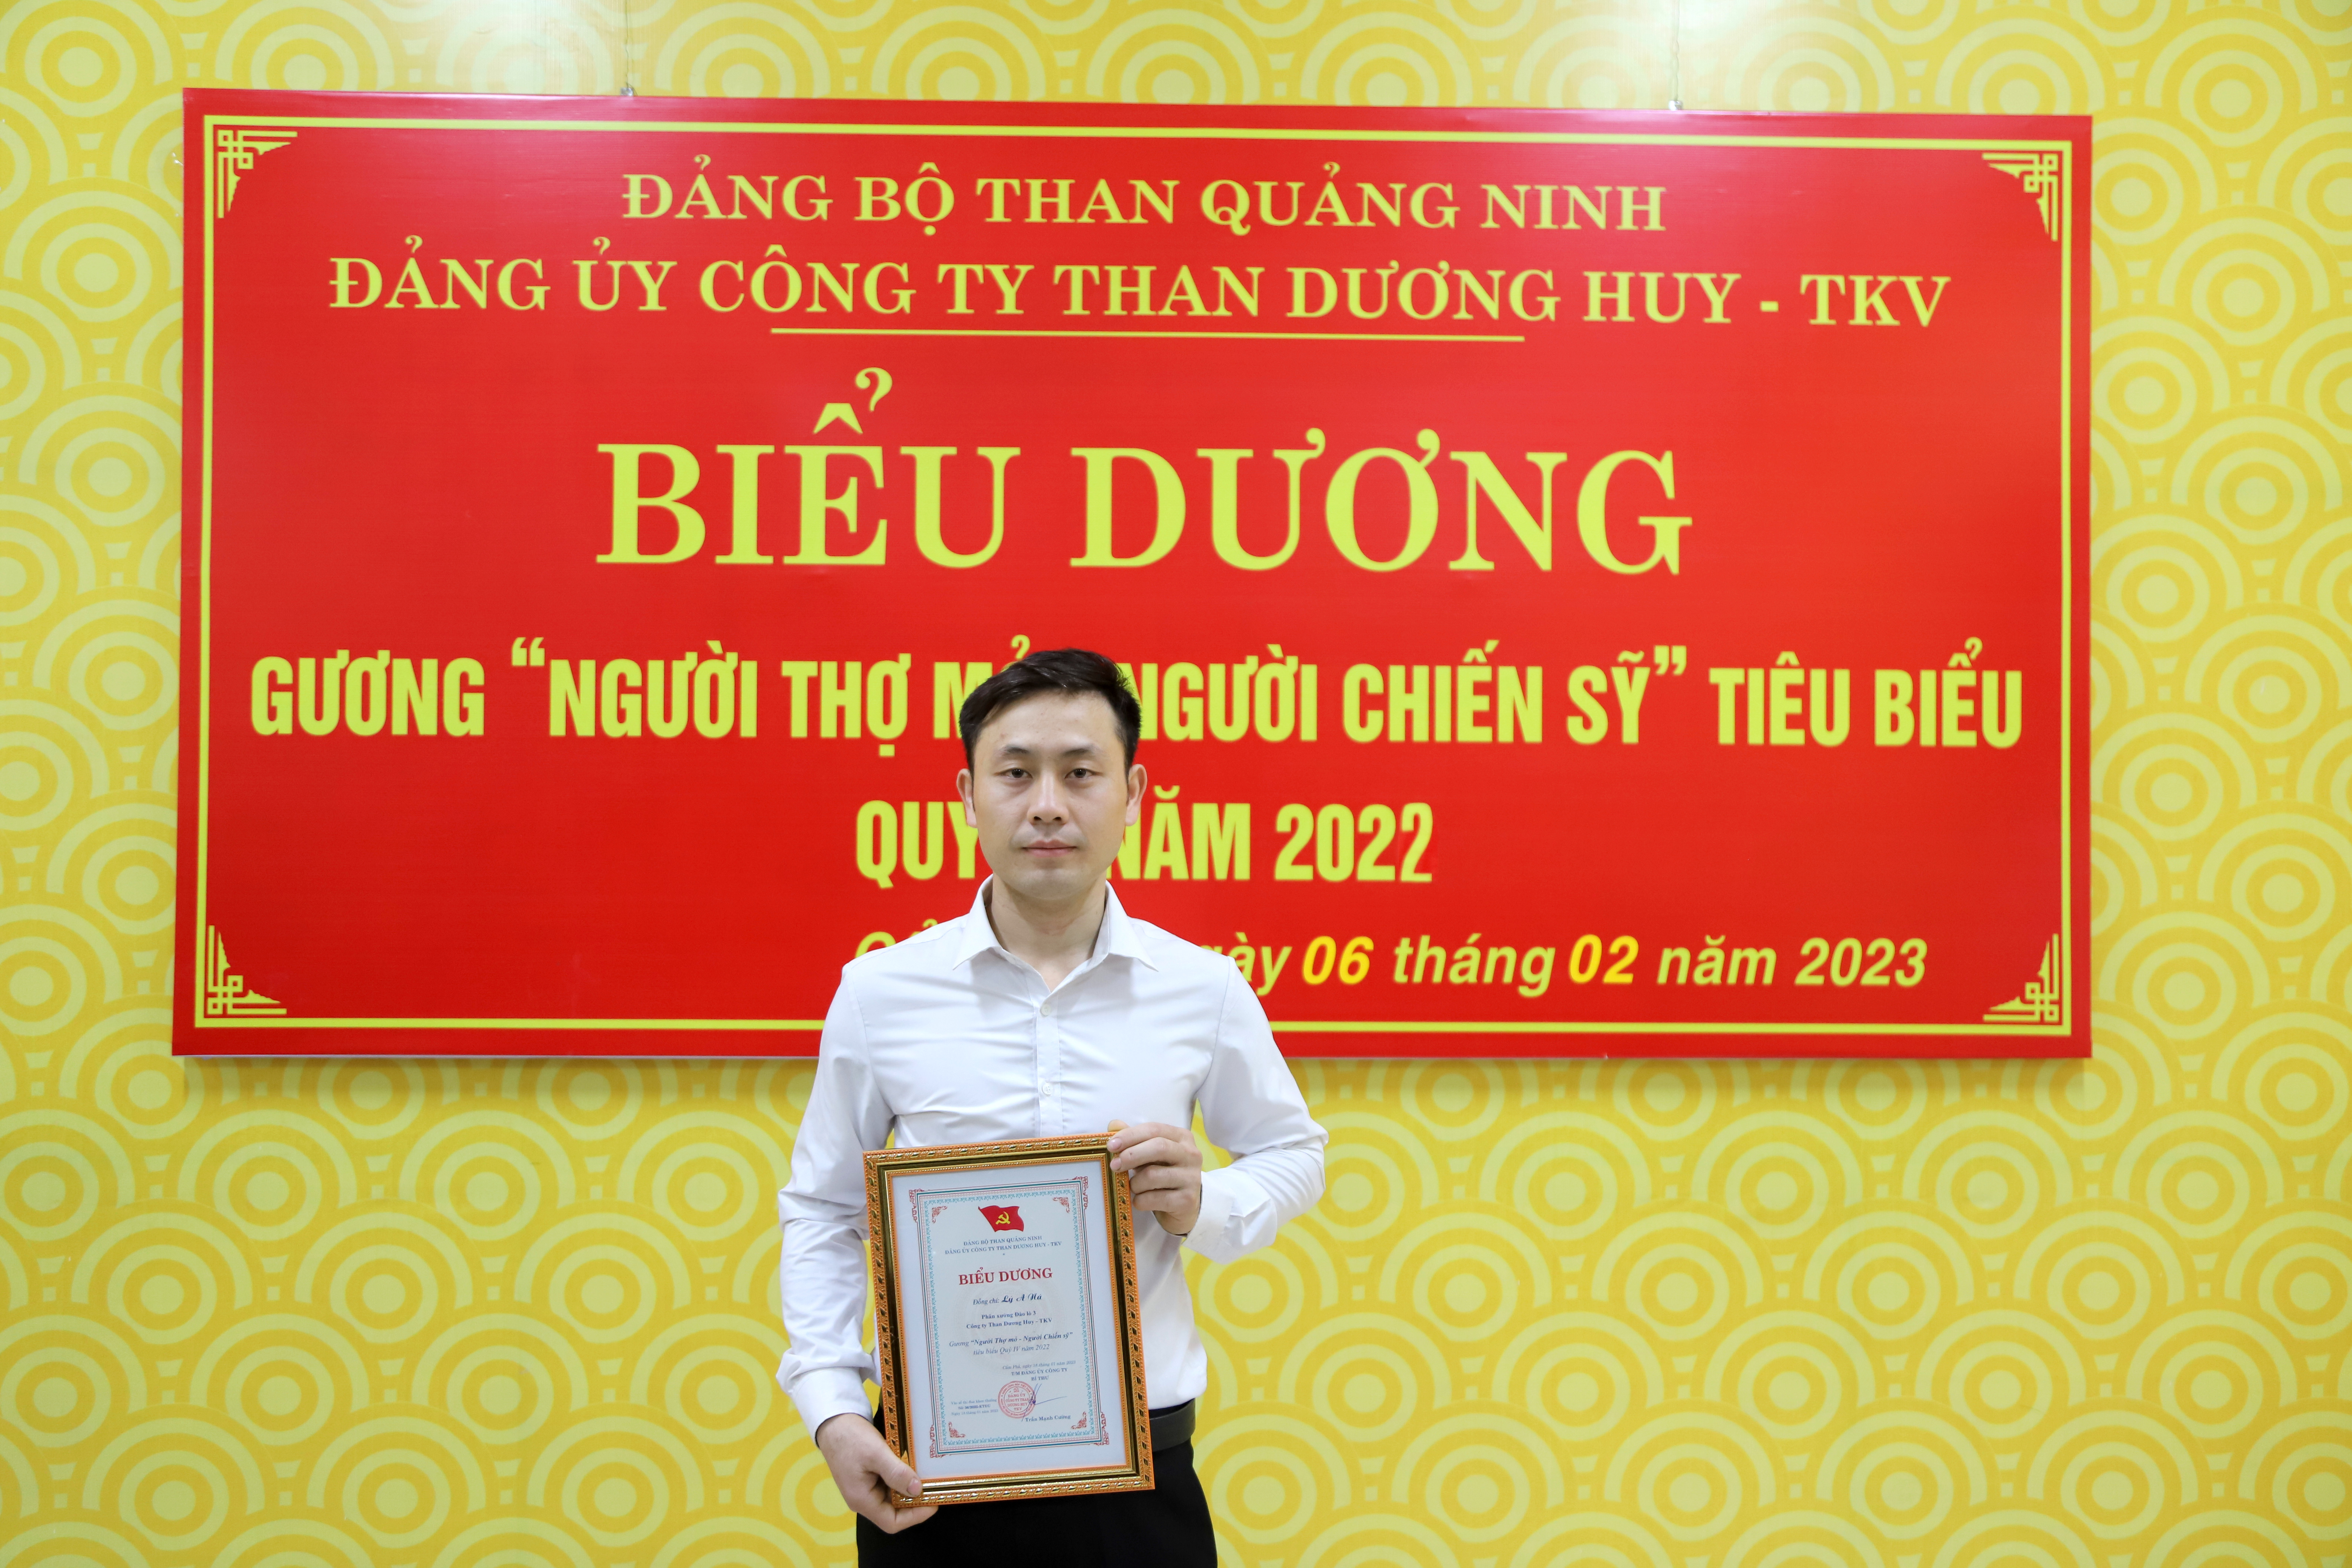 Đảng ủy Than Dương Huy: Tiếp tục lan tỏa hình ảnh “Người Thợ mỏ - Người Chiến sỹ”